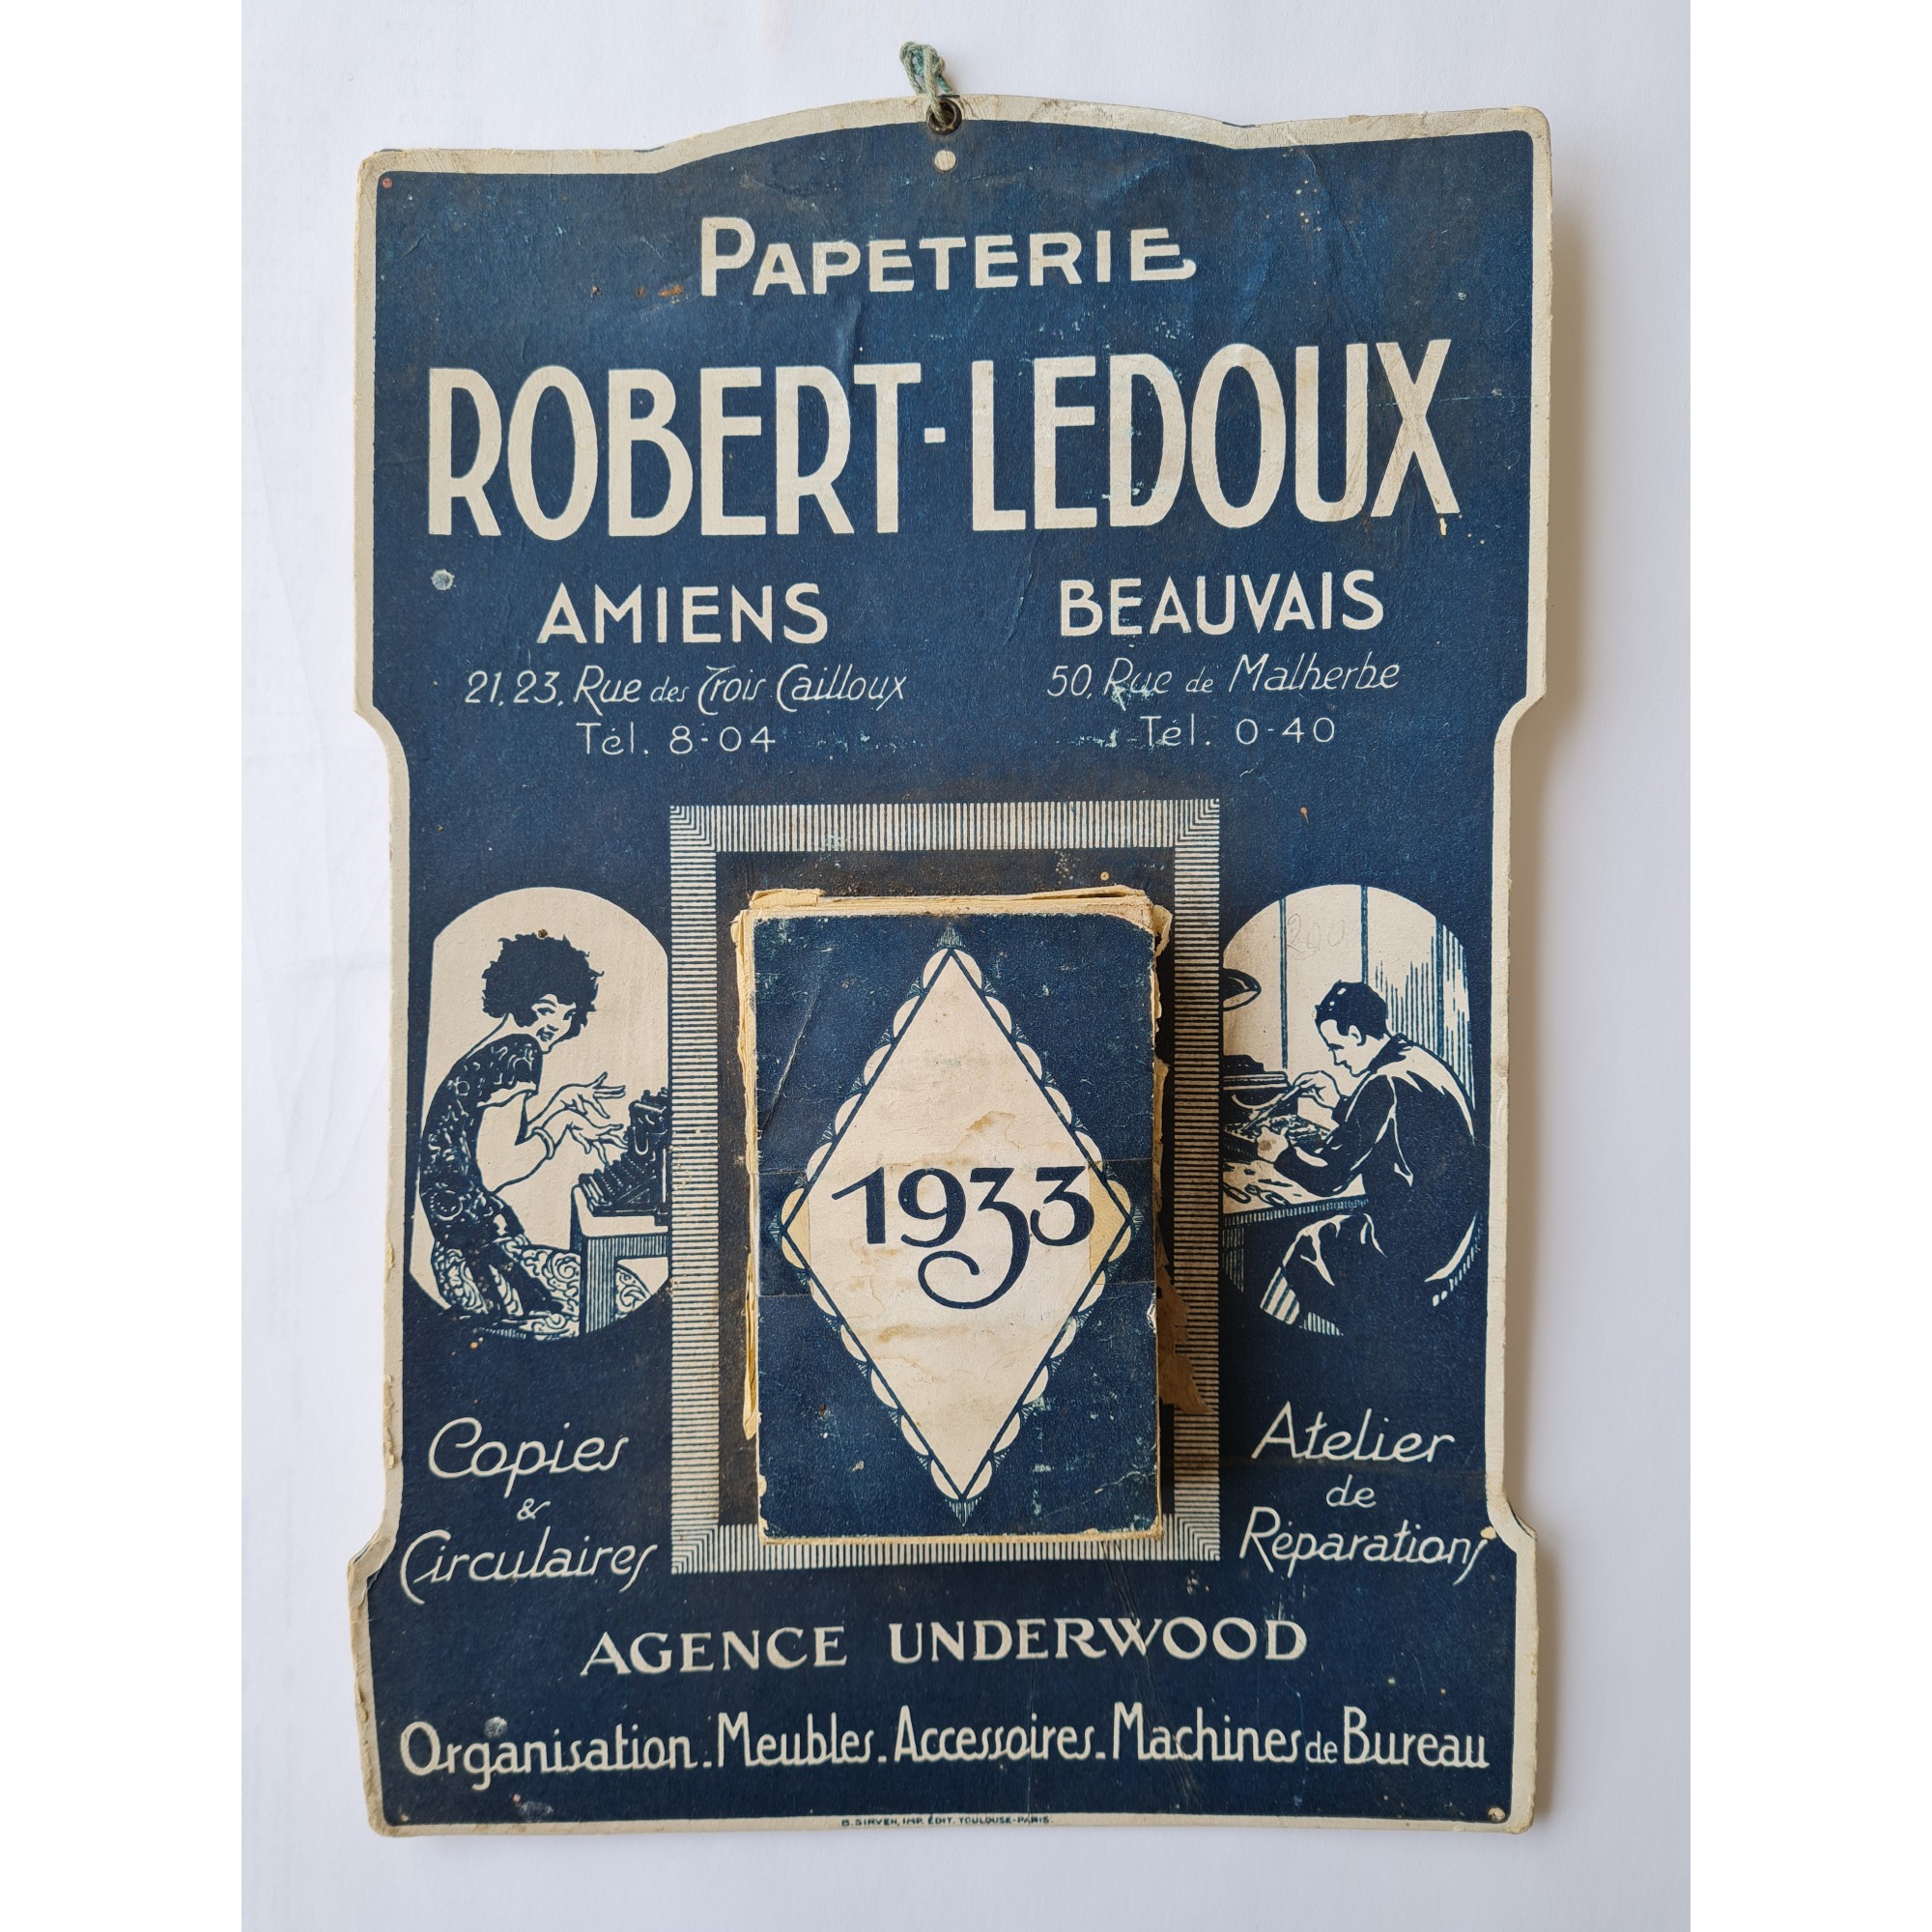 1933 - Papeterie Robert-Ledoux - Amiens - Beauvais